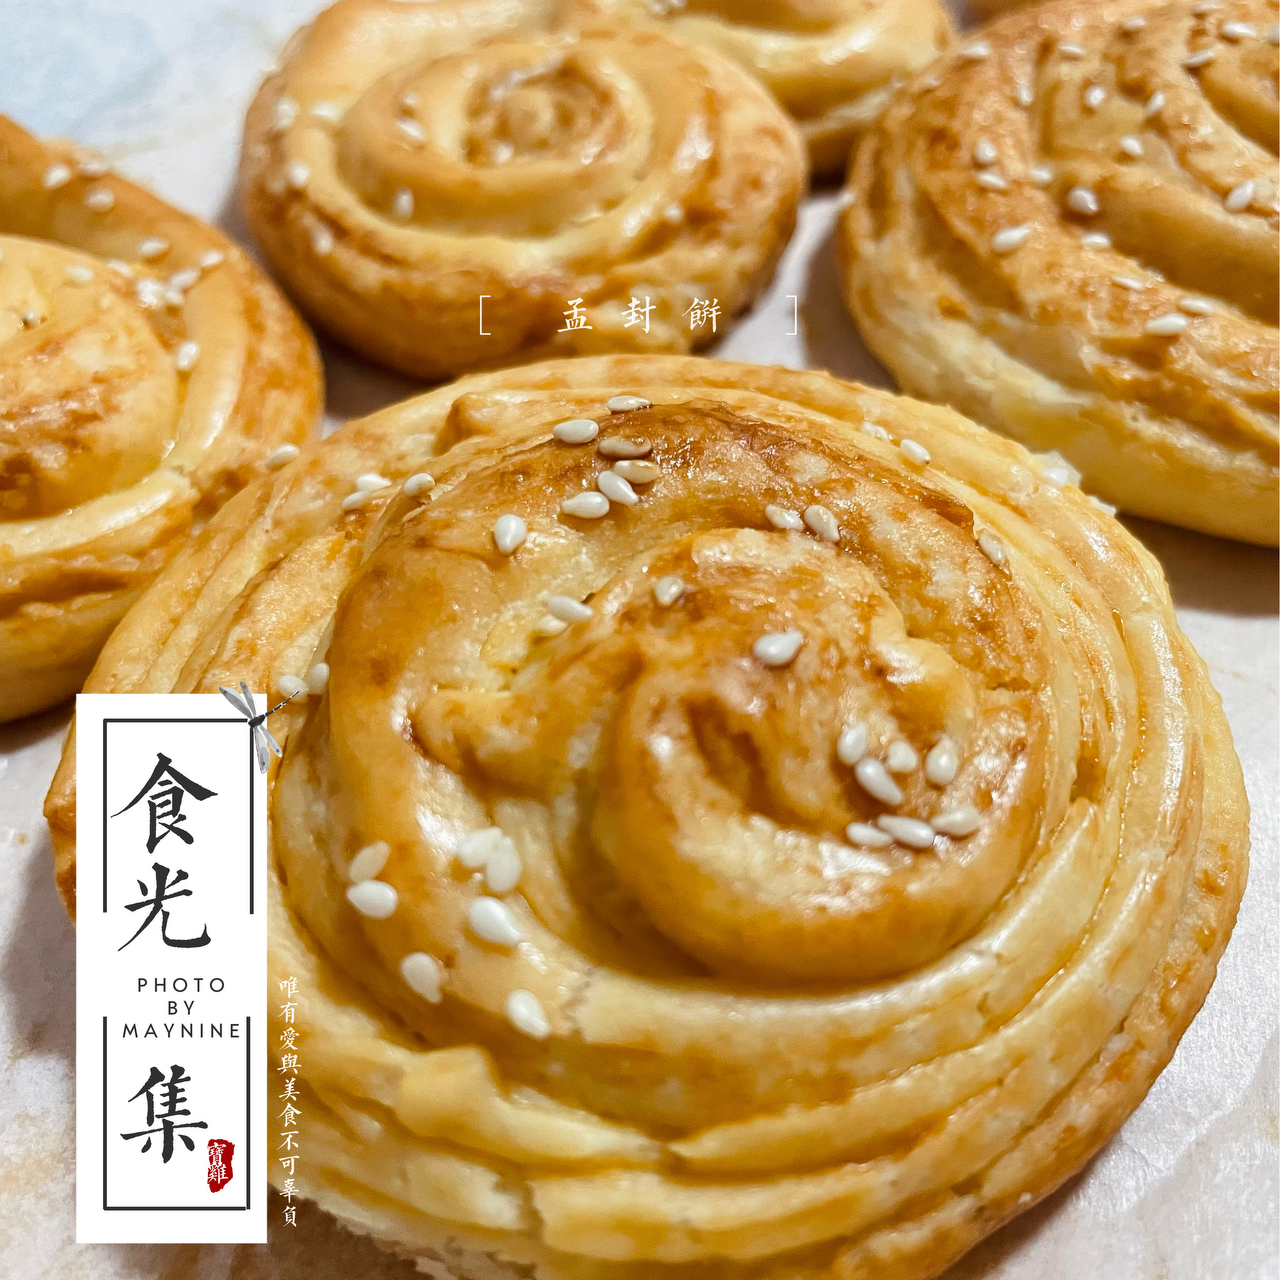 名扬京都的皇家御饼——孟封饼